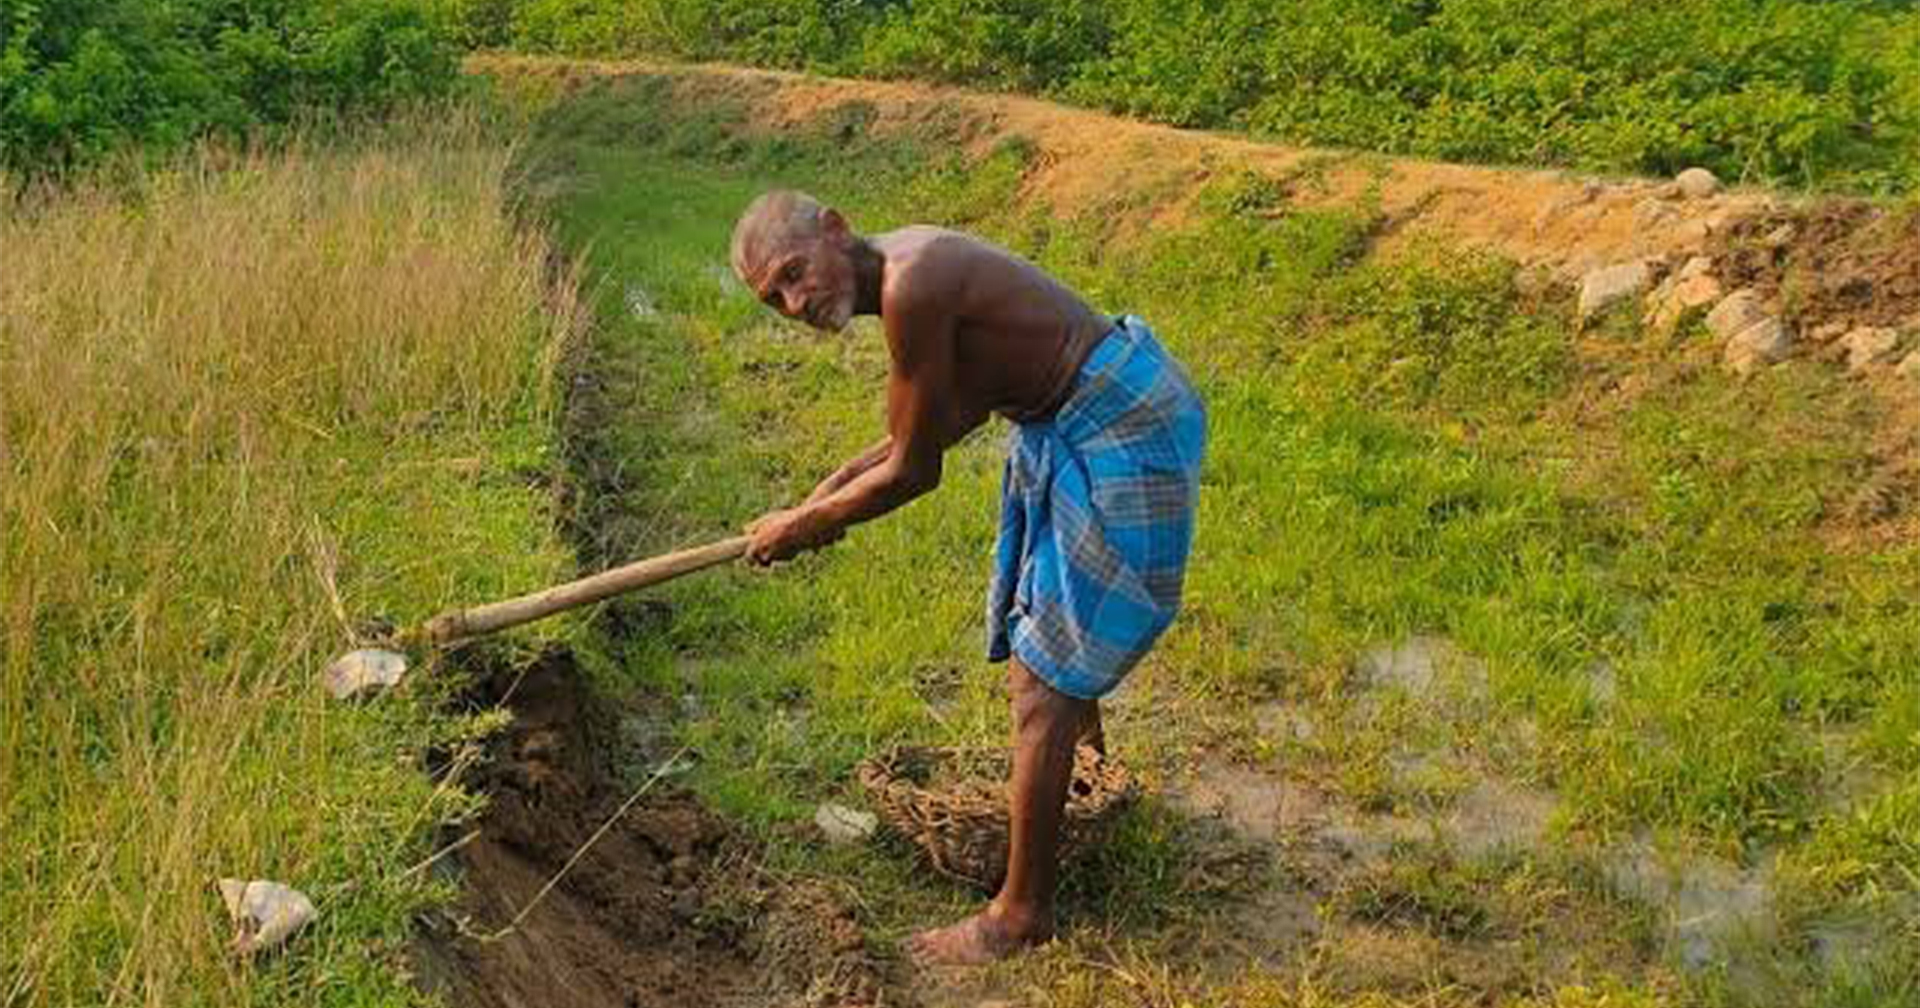 คุณลุงชาวอินเดีย ใช้เวลา 30 ปีขุดคลองยาว 3 กม. เพื่อให้น้ำฝนจากภูเขาไหลมาลงสระน้ำในหมู่บ้าน